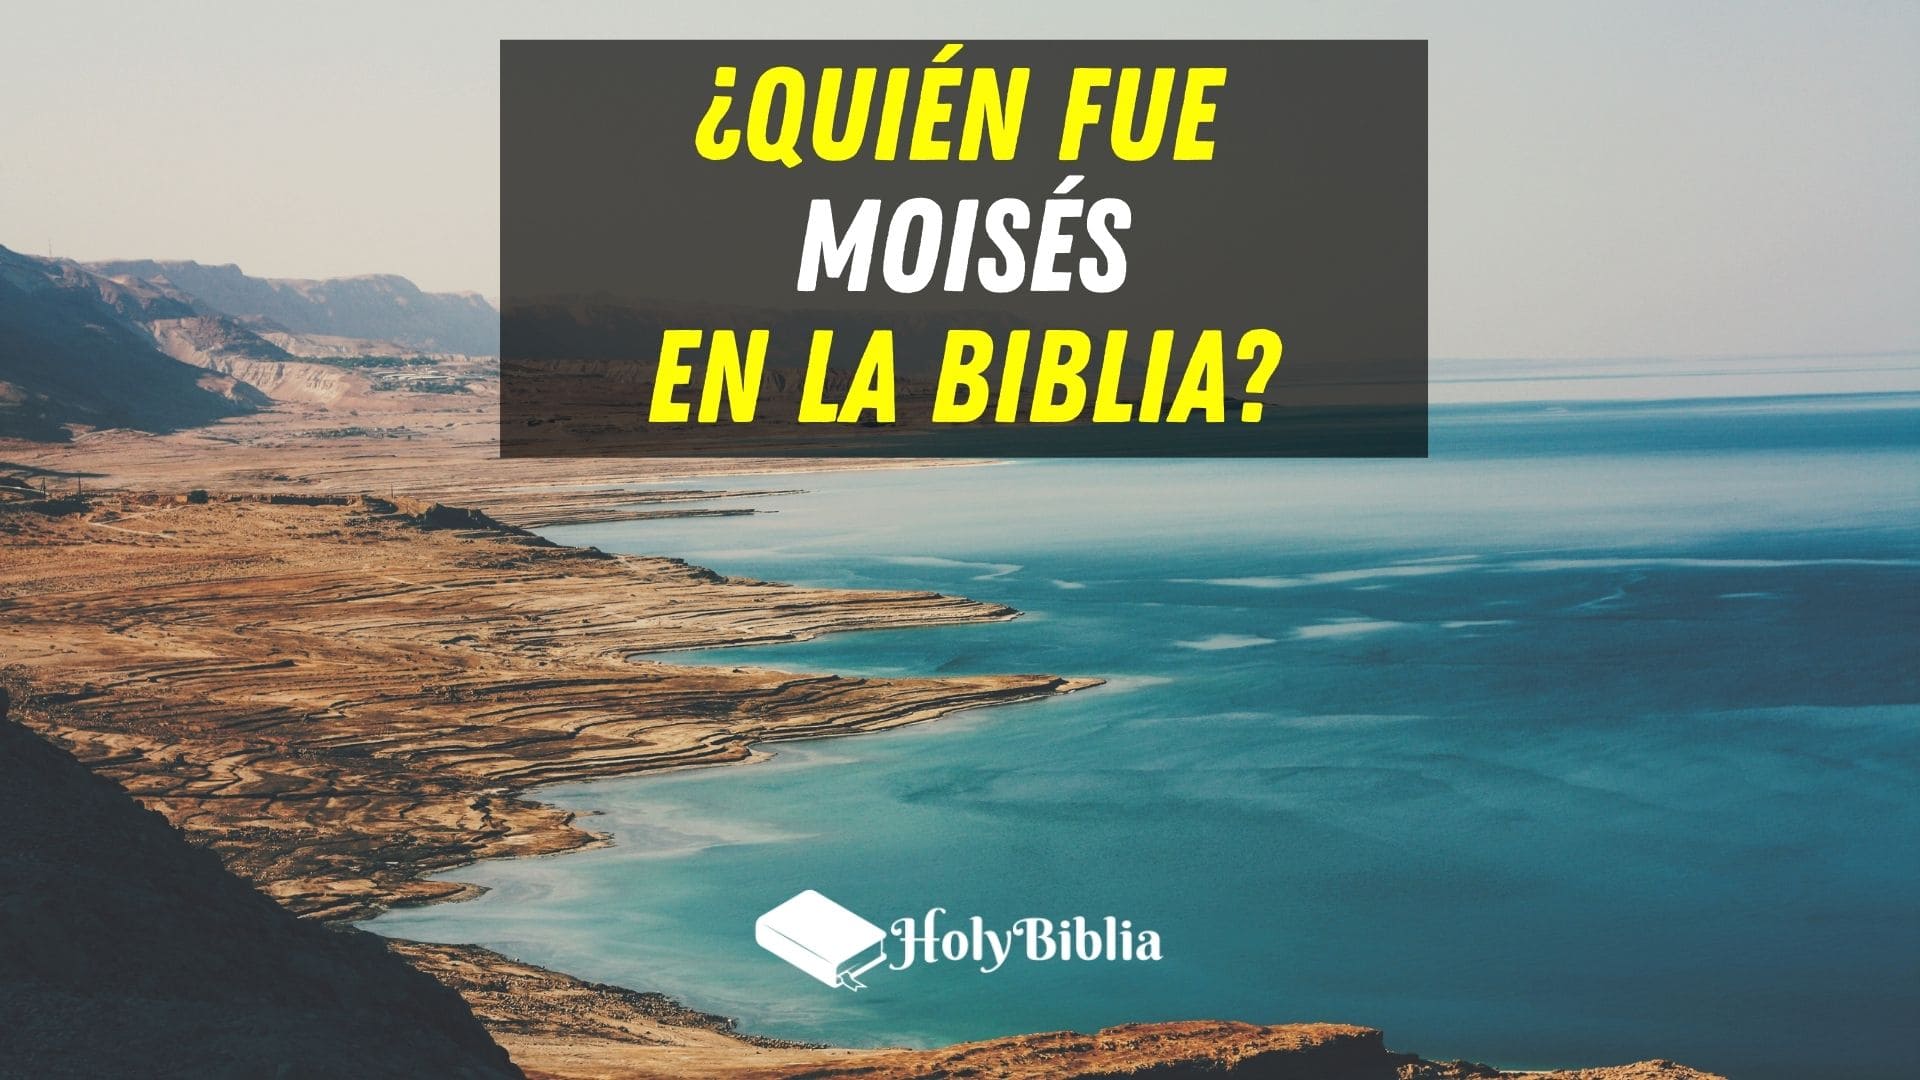 La historia de Moisés Quién era Moisés en la Biblia